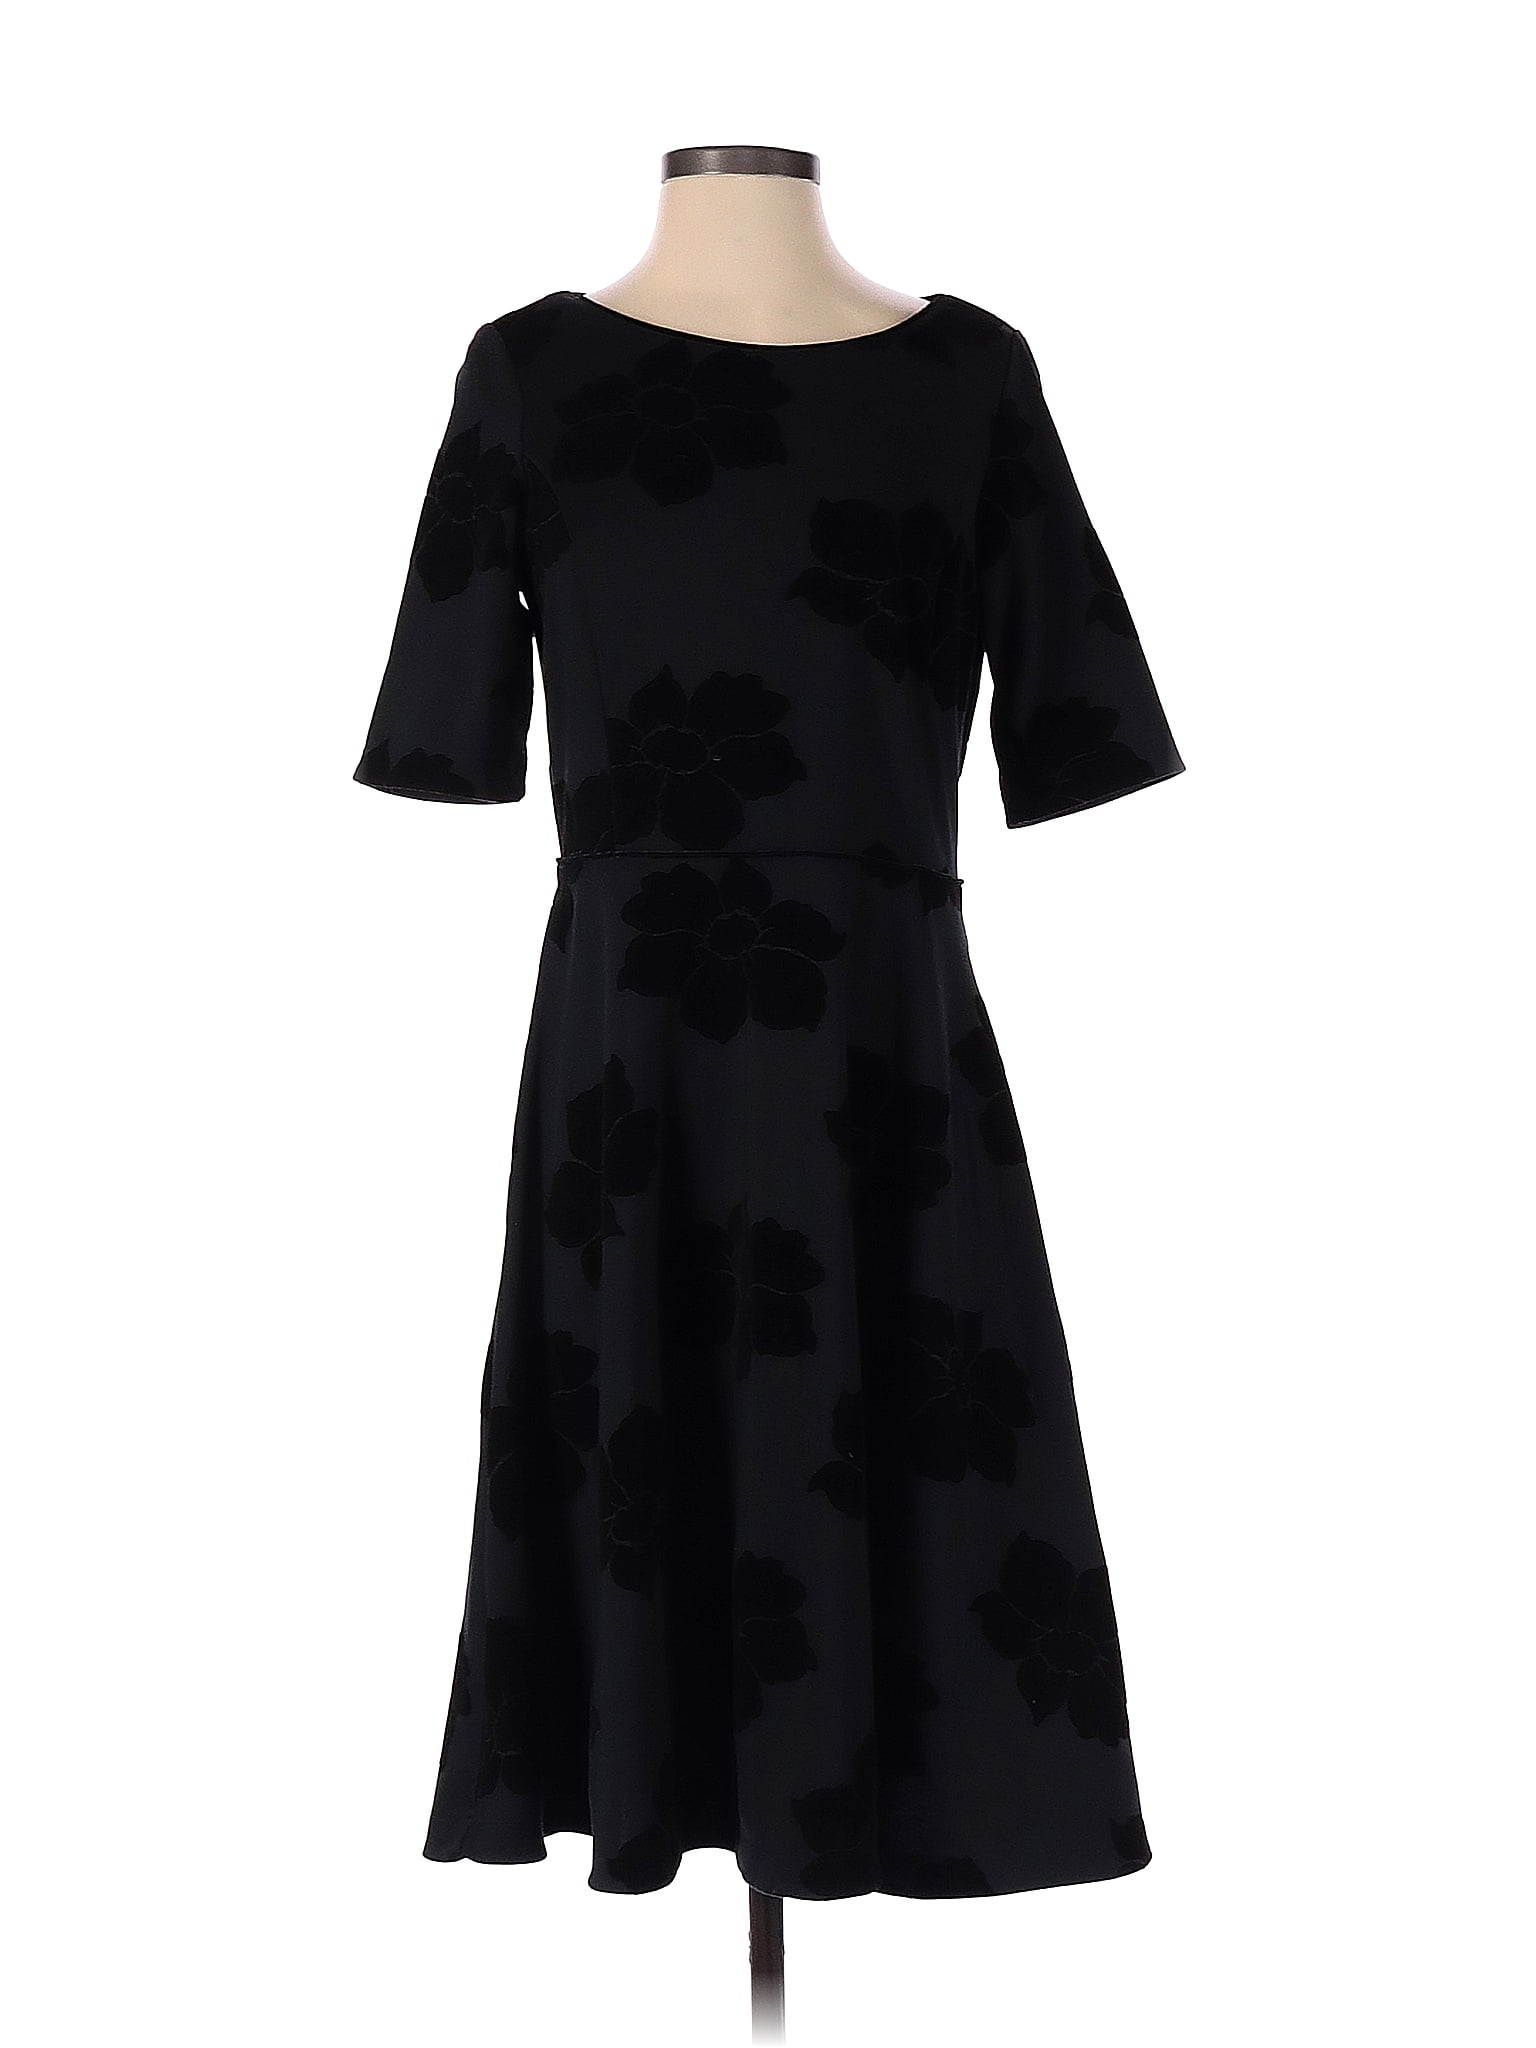 Lands' End Black Casual Dress Size S - 81% off | thredUP